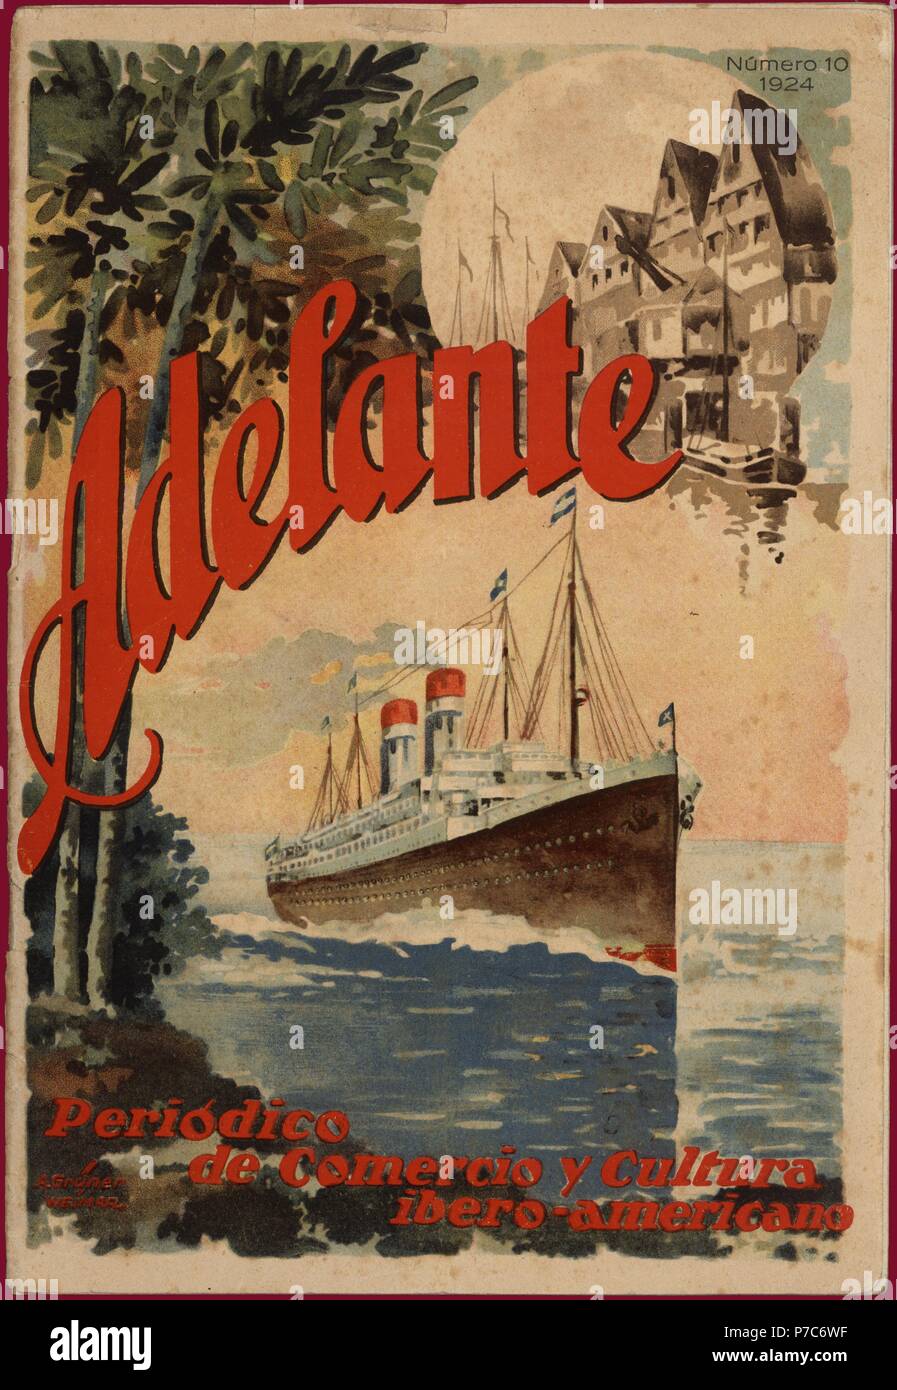 Portada de la revista Adelante, periódico de comercio y cultura ibero-americano . Berlín, 1924. Foto Stock